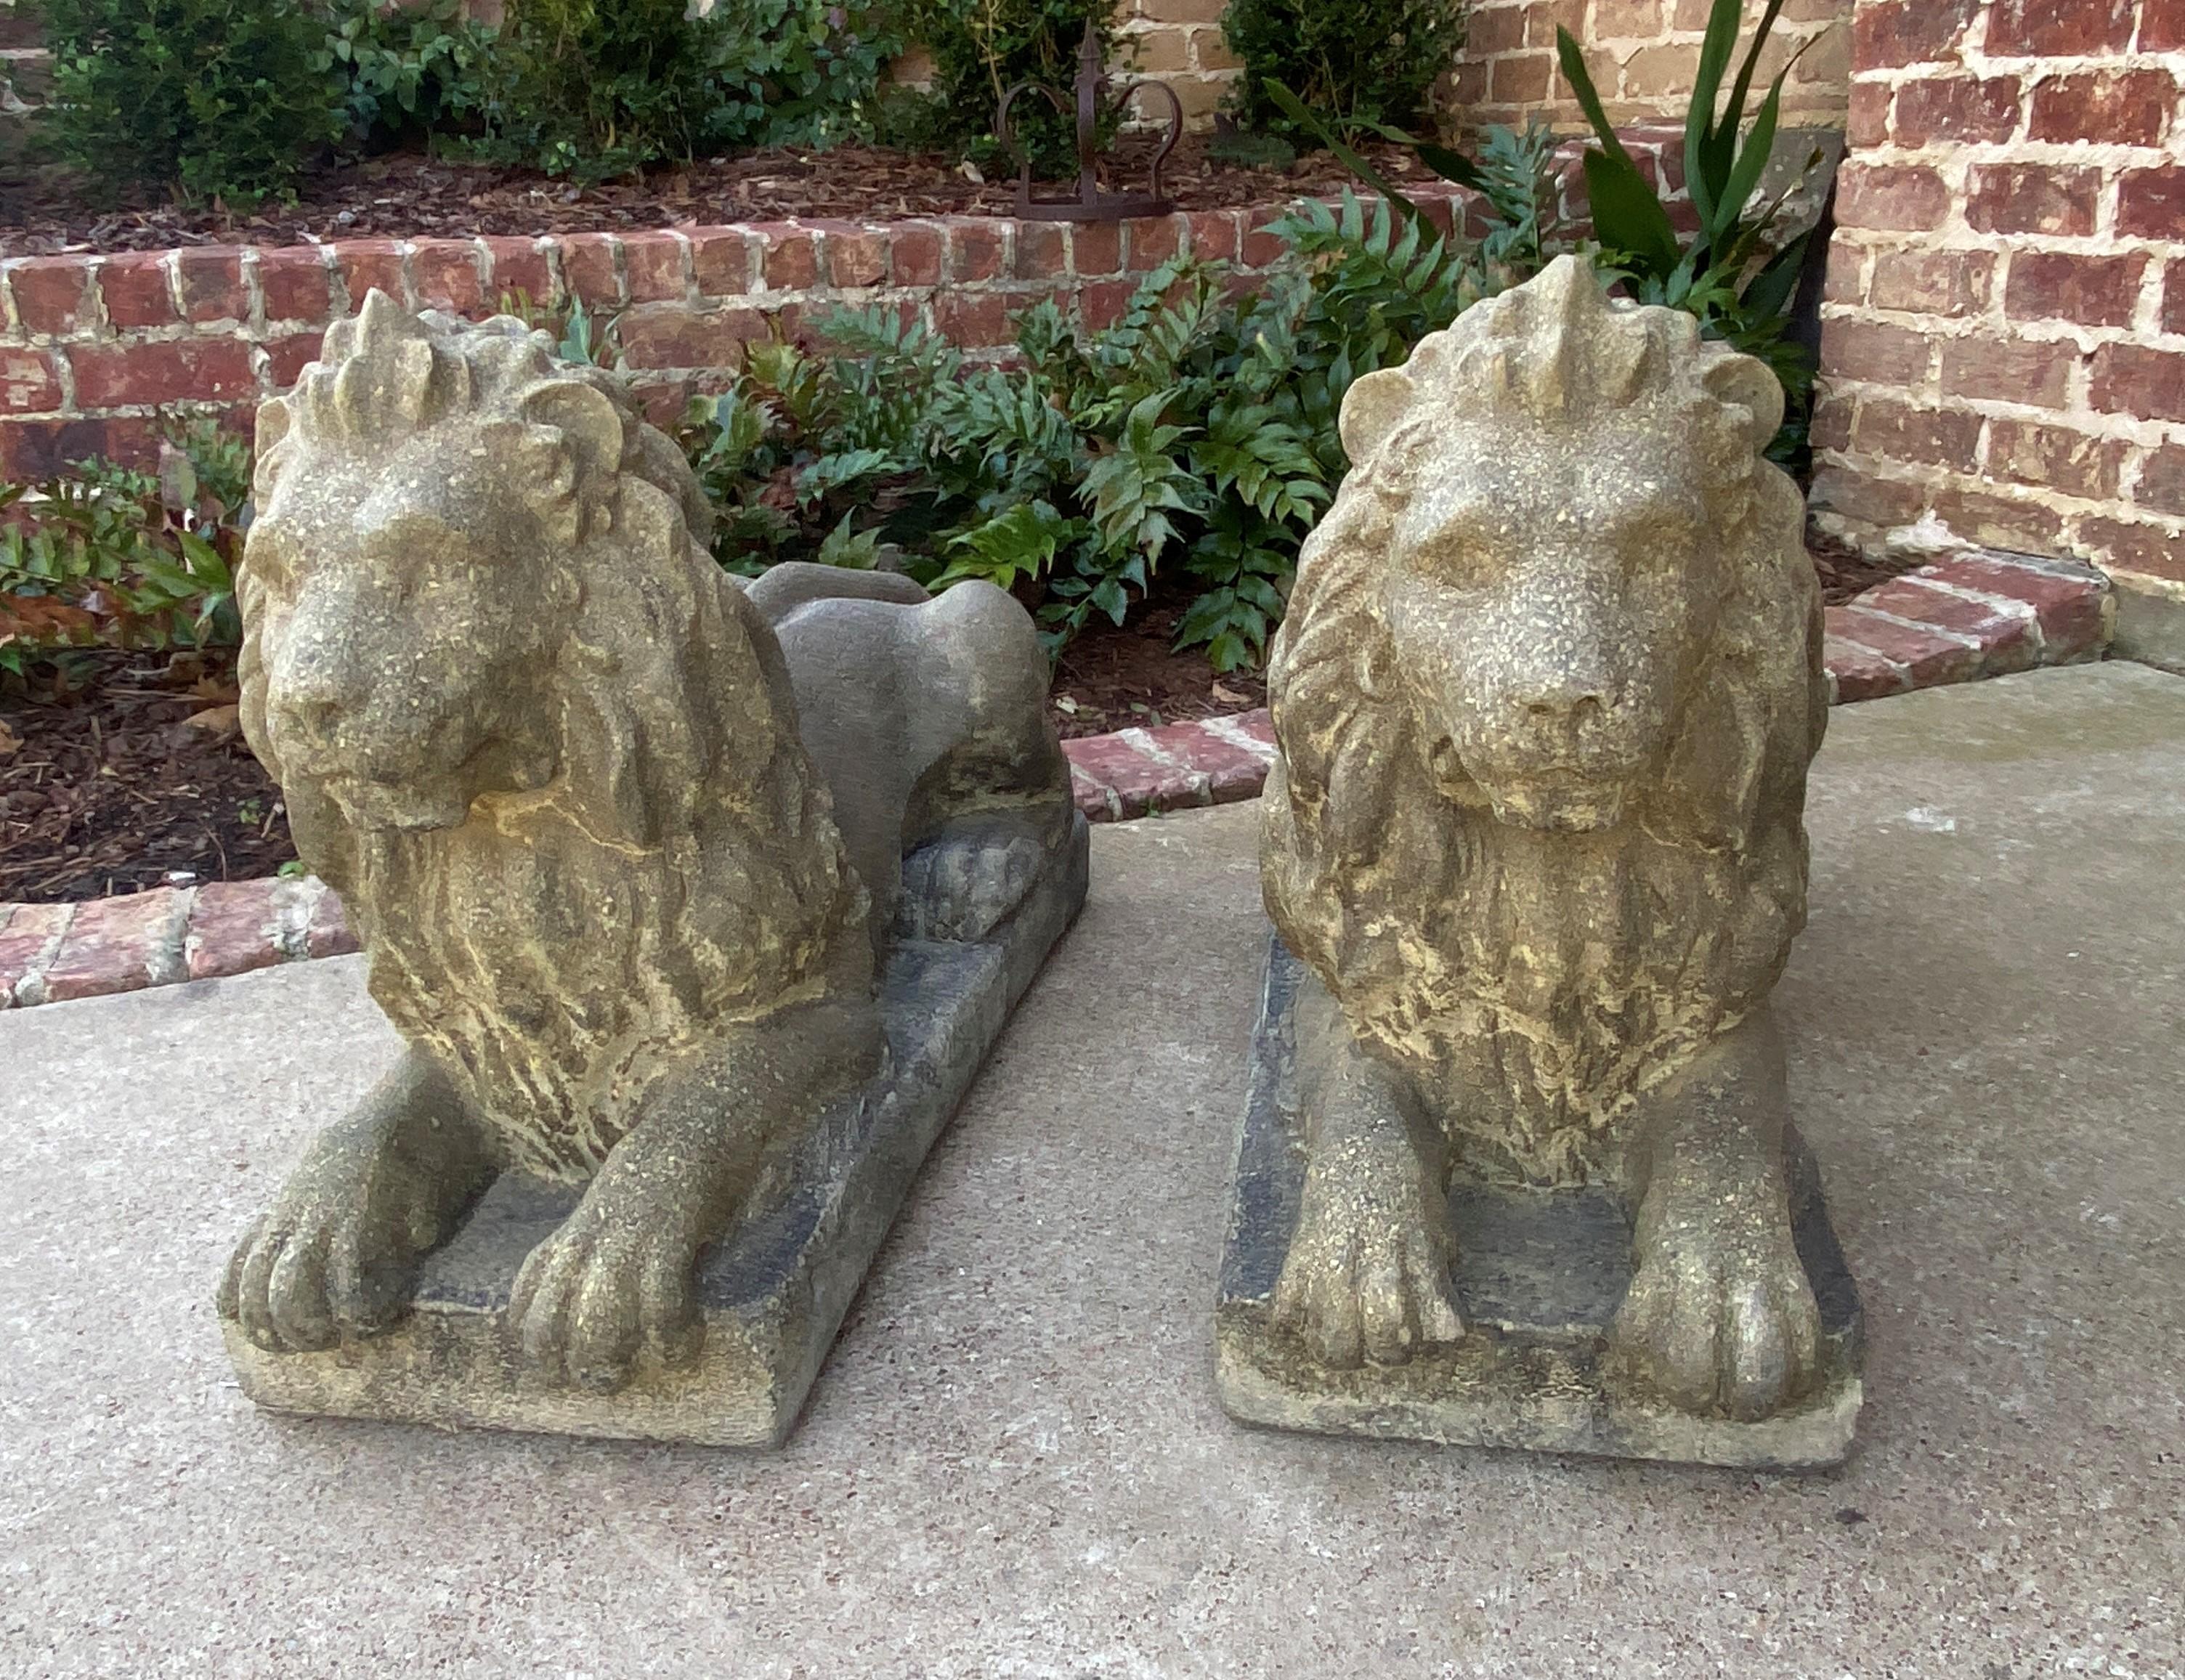 Vintage English Statues Garden Figures Lions Cast Stone Pair Recumbent Lions 14